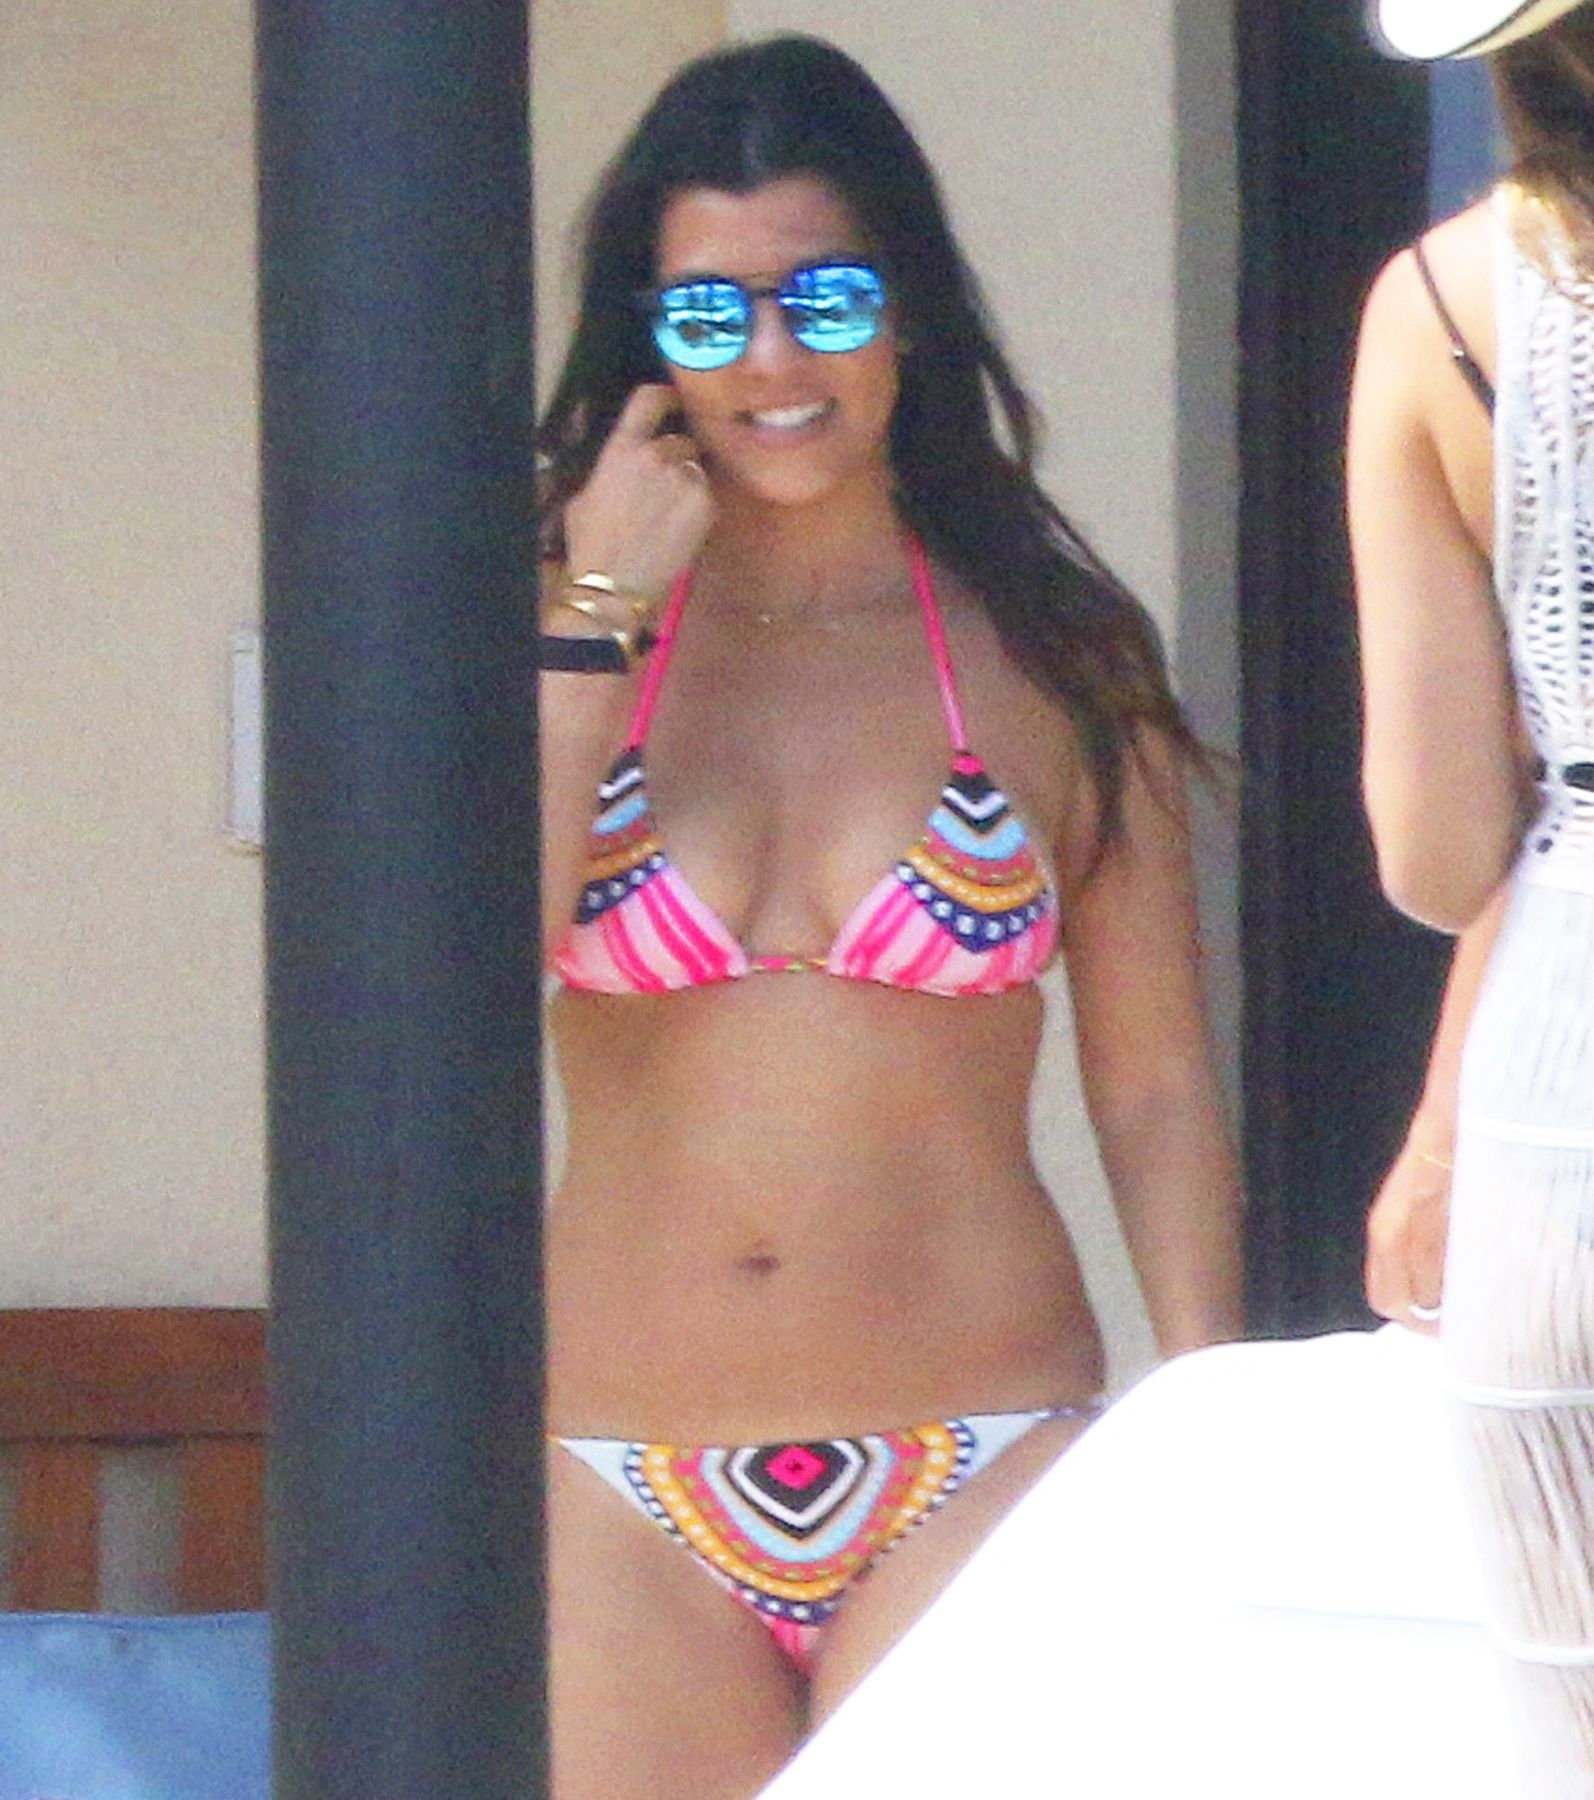 kourtney kardashian celebrates birthday with surprise trip to mexico bikini pictures